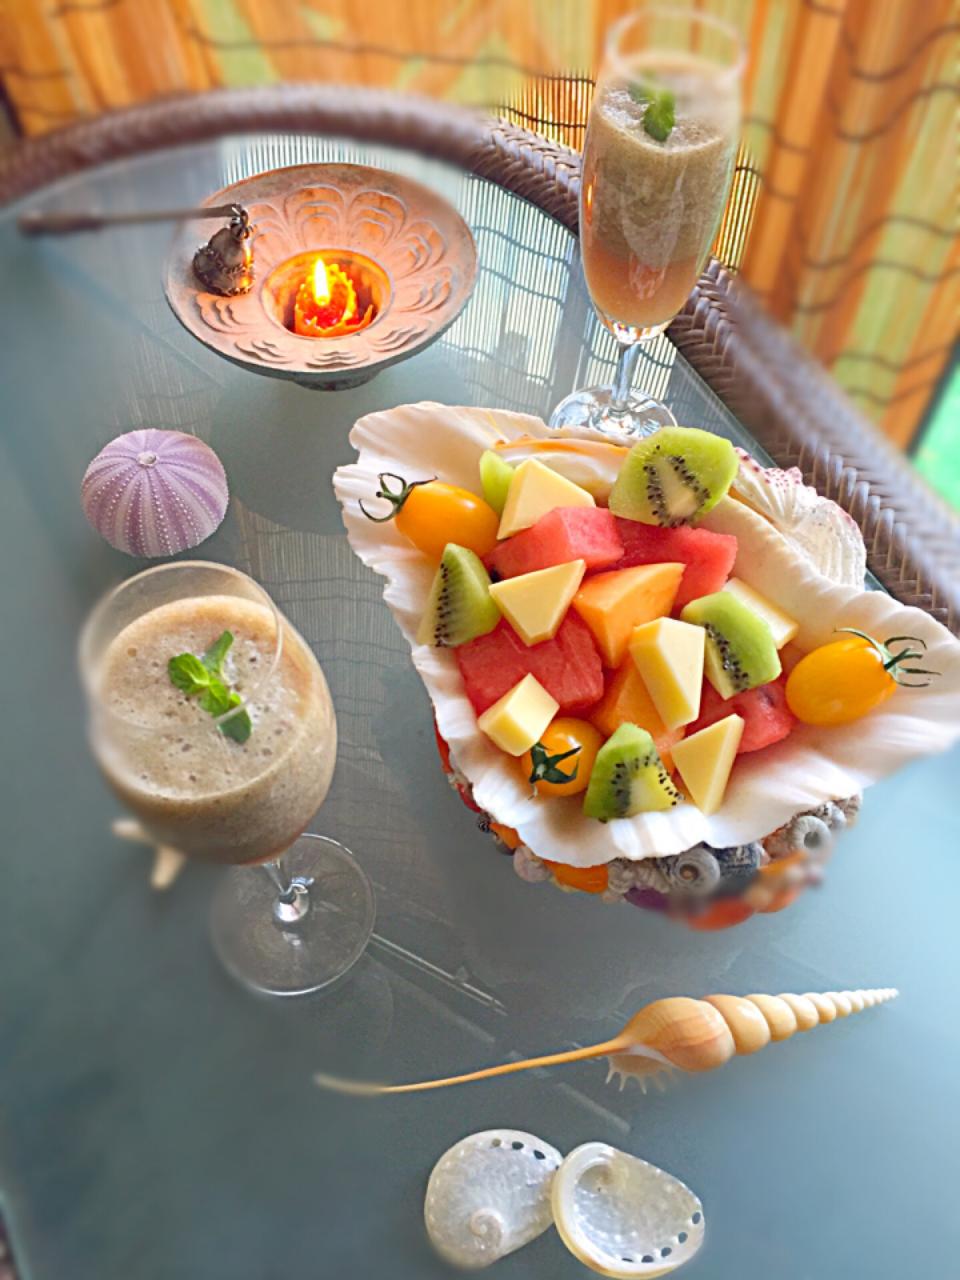 コンテとフルーツの盛り合わせと、ピーチウーロンのフローズンカクテル  #コンテイベント  #金魚の肴